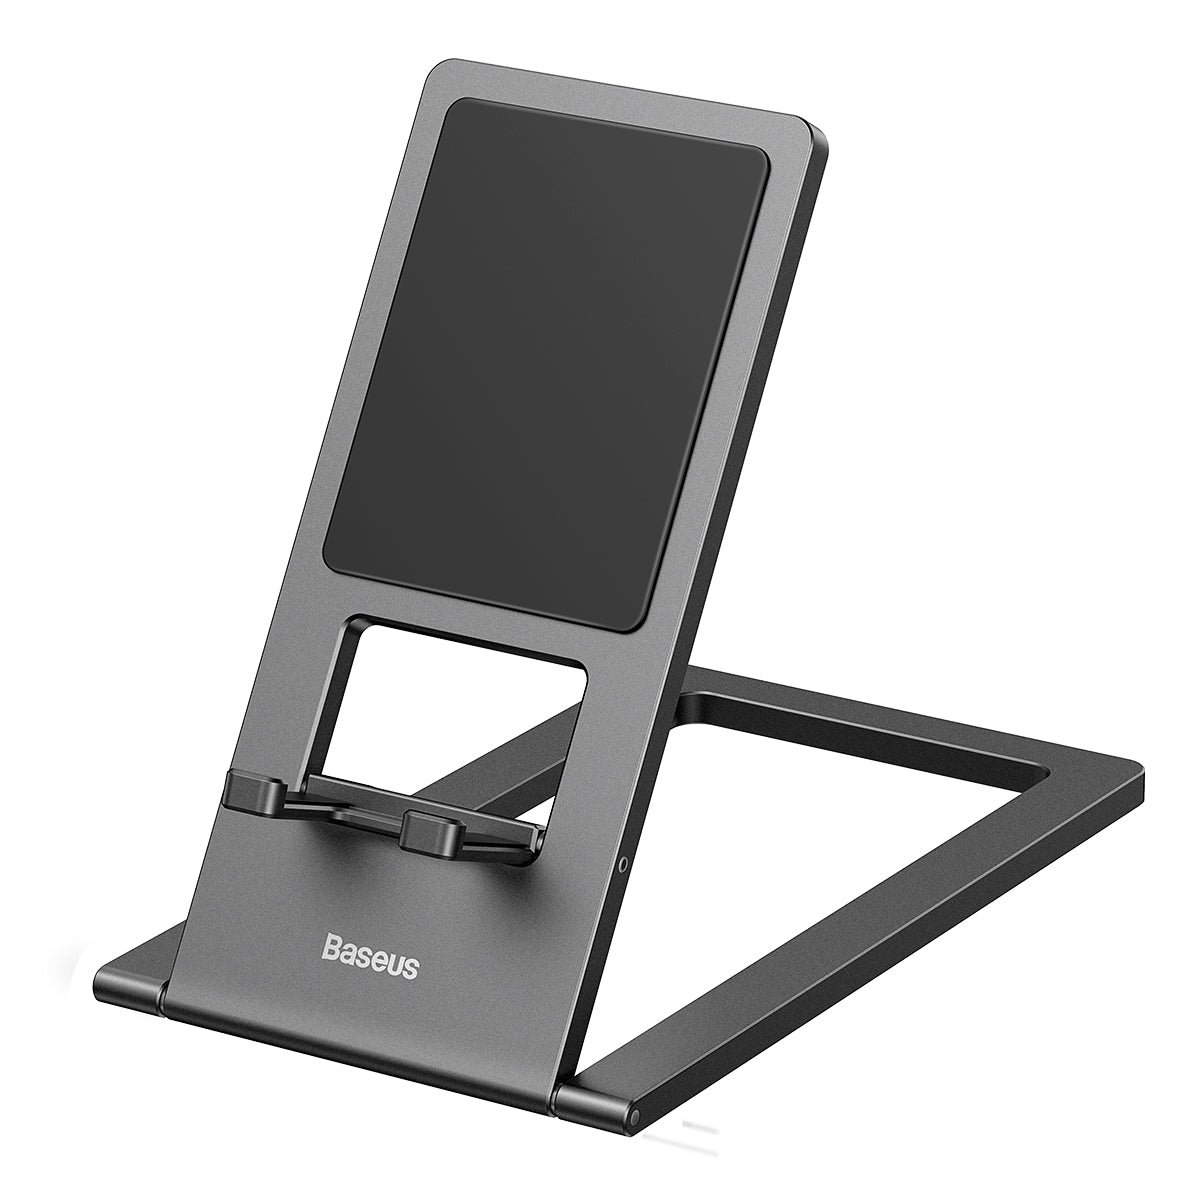 Baseus Foldable Metal Desktop Tablet and Smartphone Holder